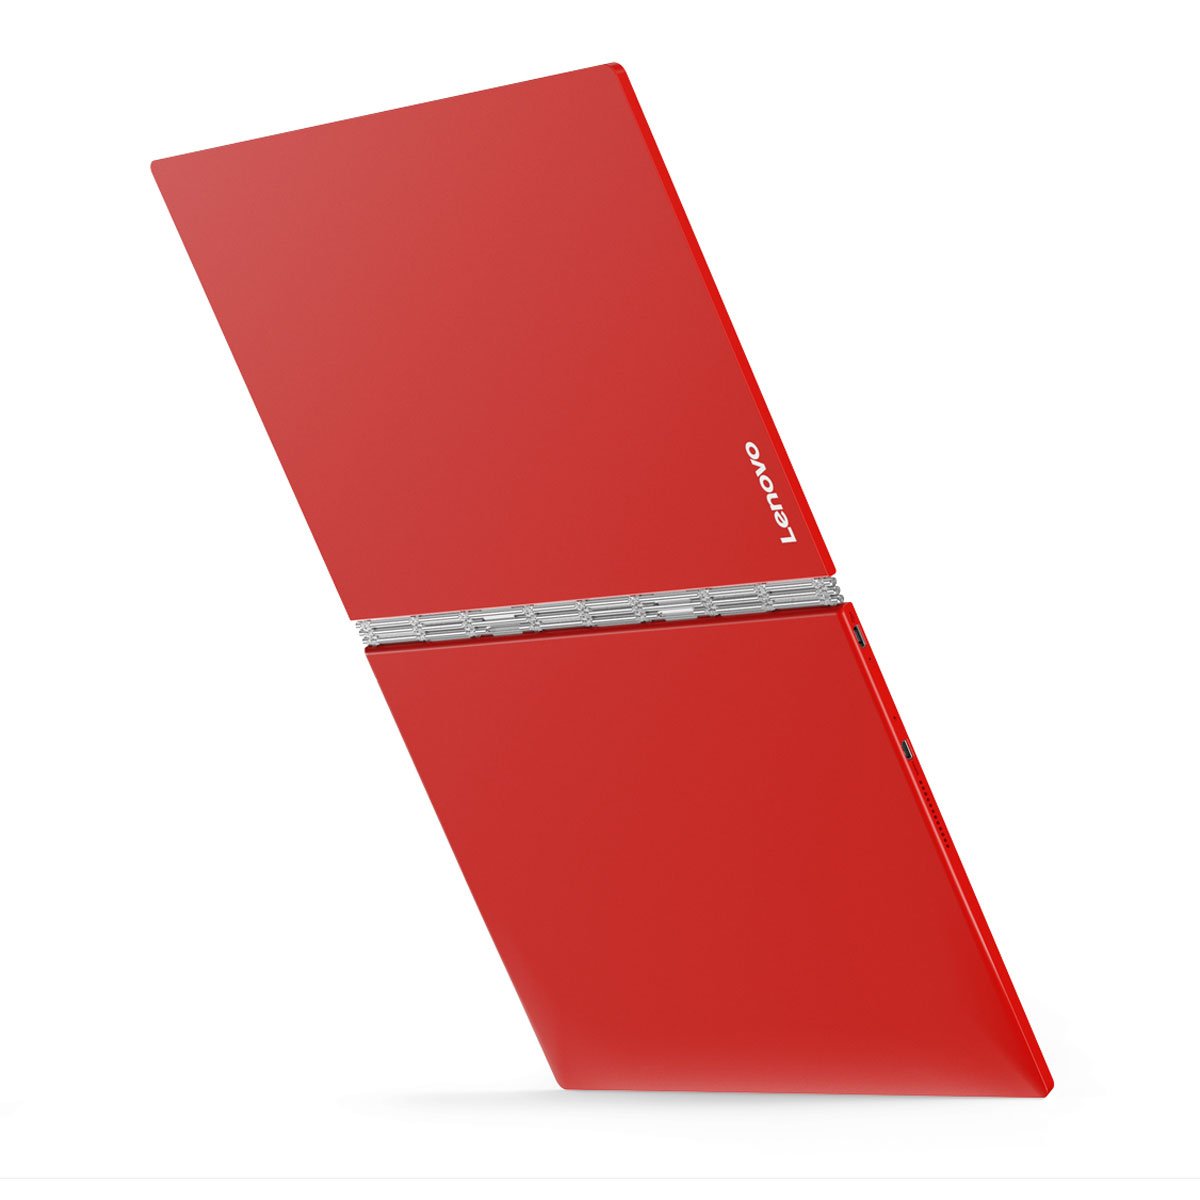 Paquete 2 en 1 Tableta Lenovo Yoga Book W10 Roja con Funda